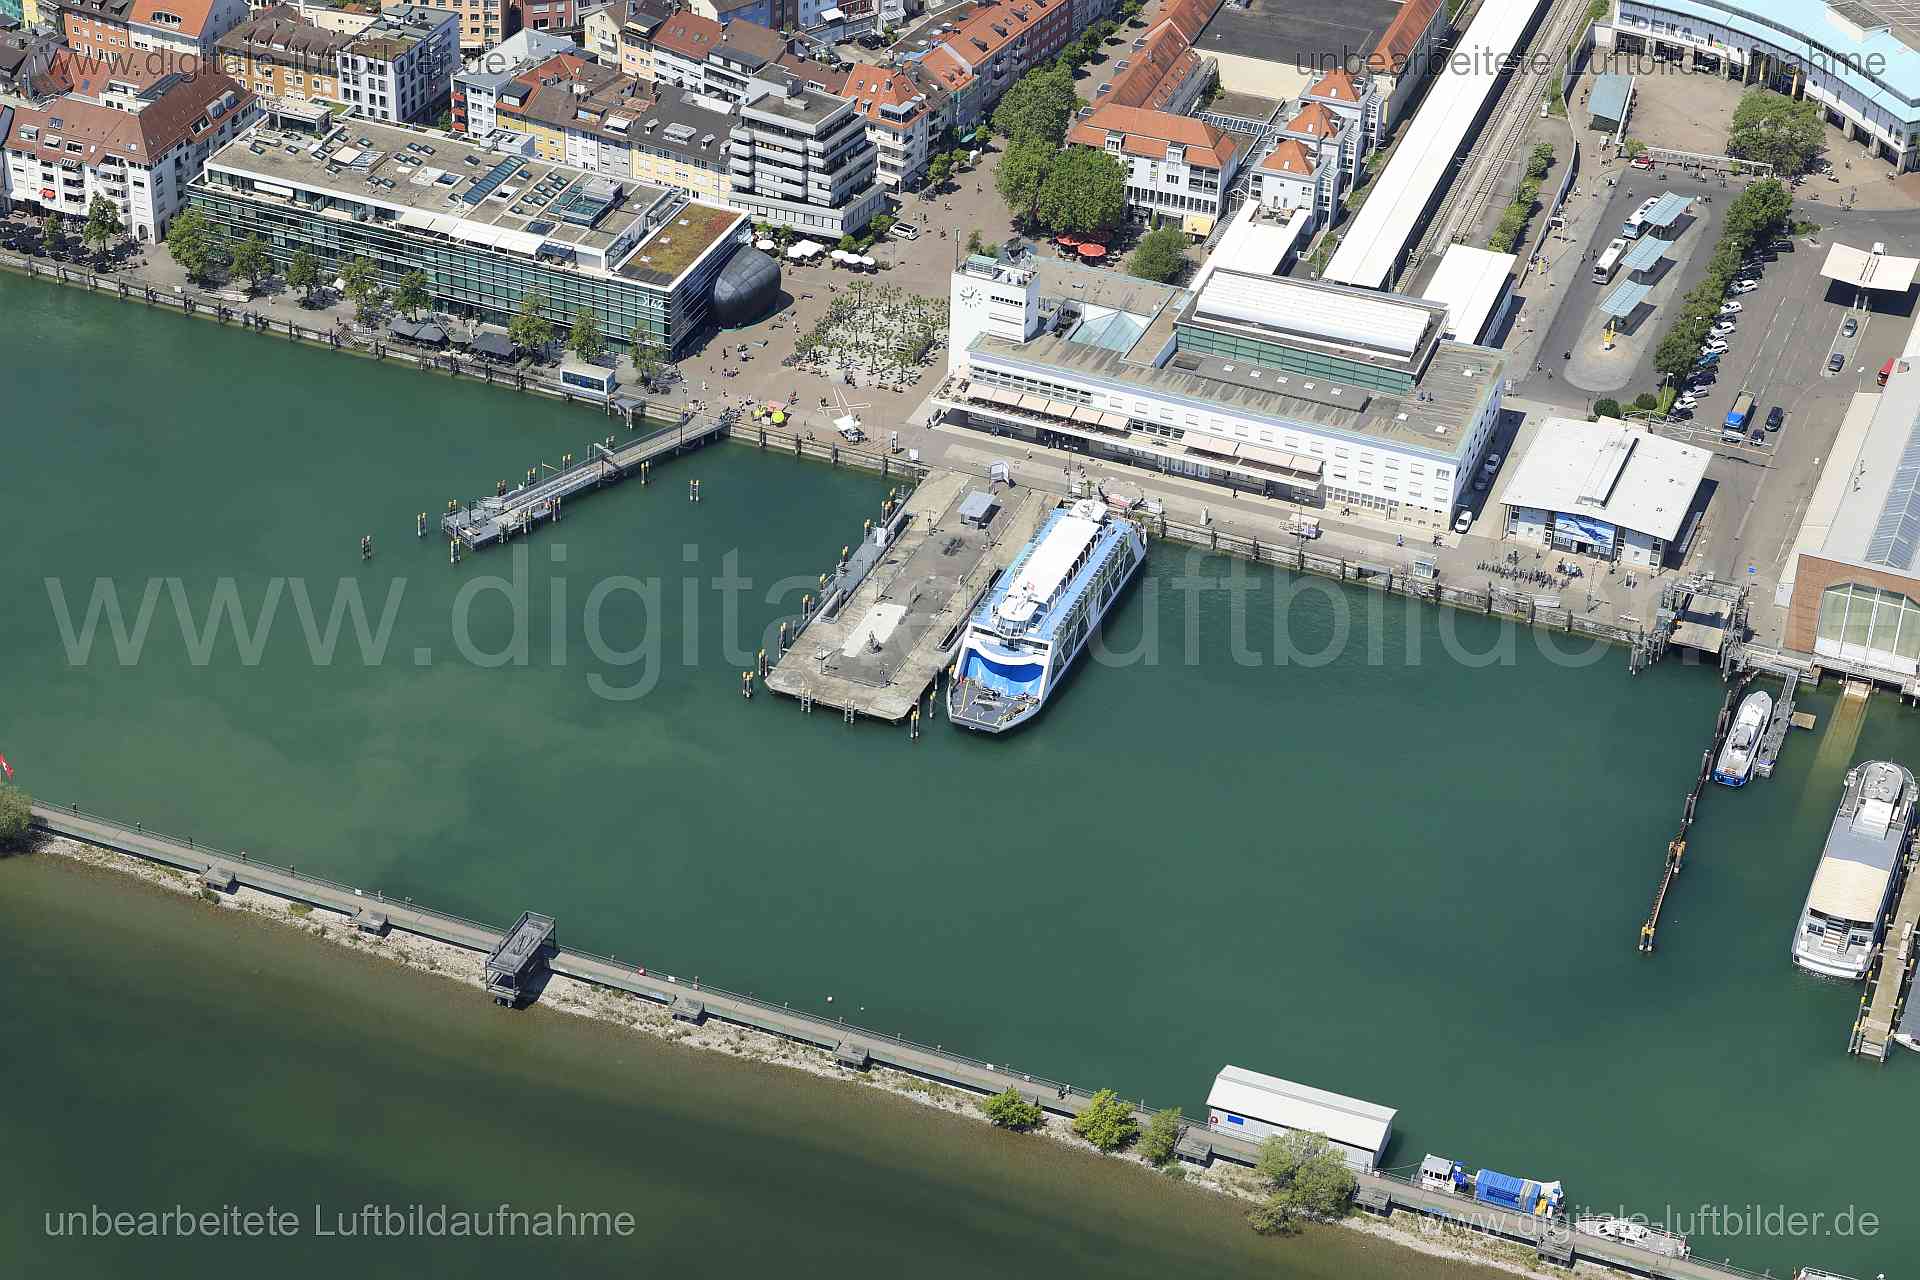 Luftbild - Hafen Friedrichshafen, Ort: Friedrichshafen, Tags: Hafen Friedrichshafen, Hafen, Fähre, Boot, Schiff, Gewässer,...